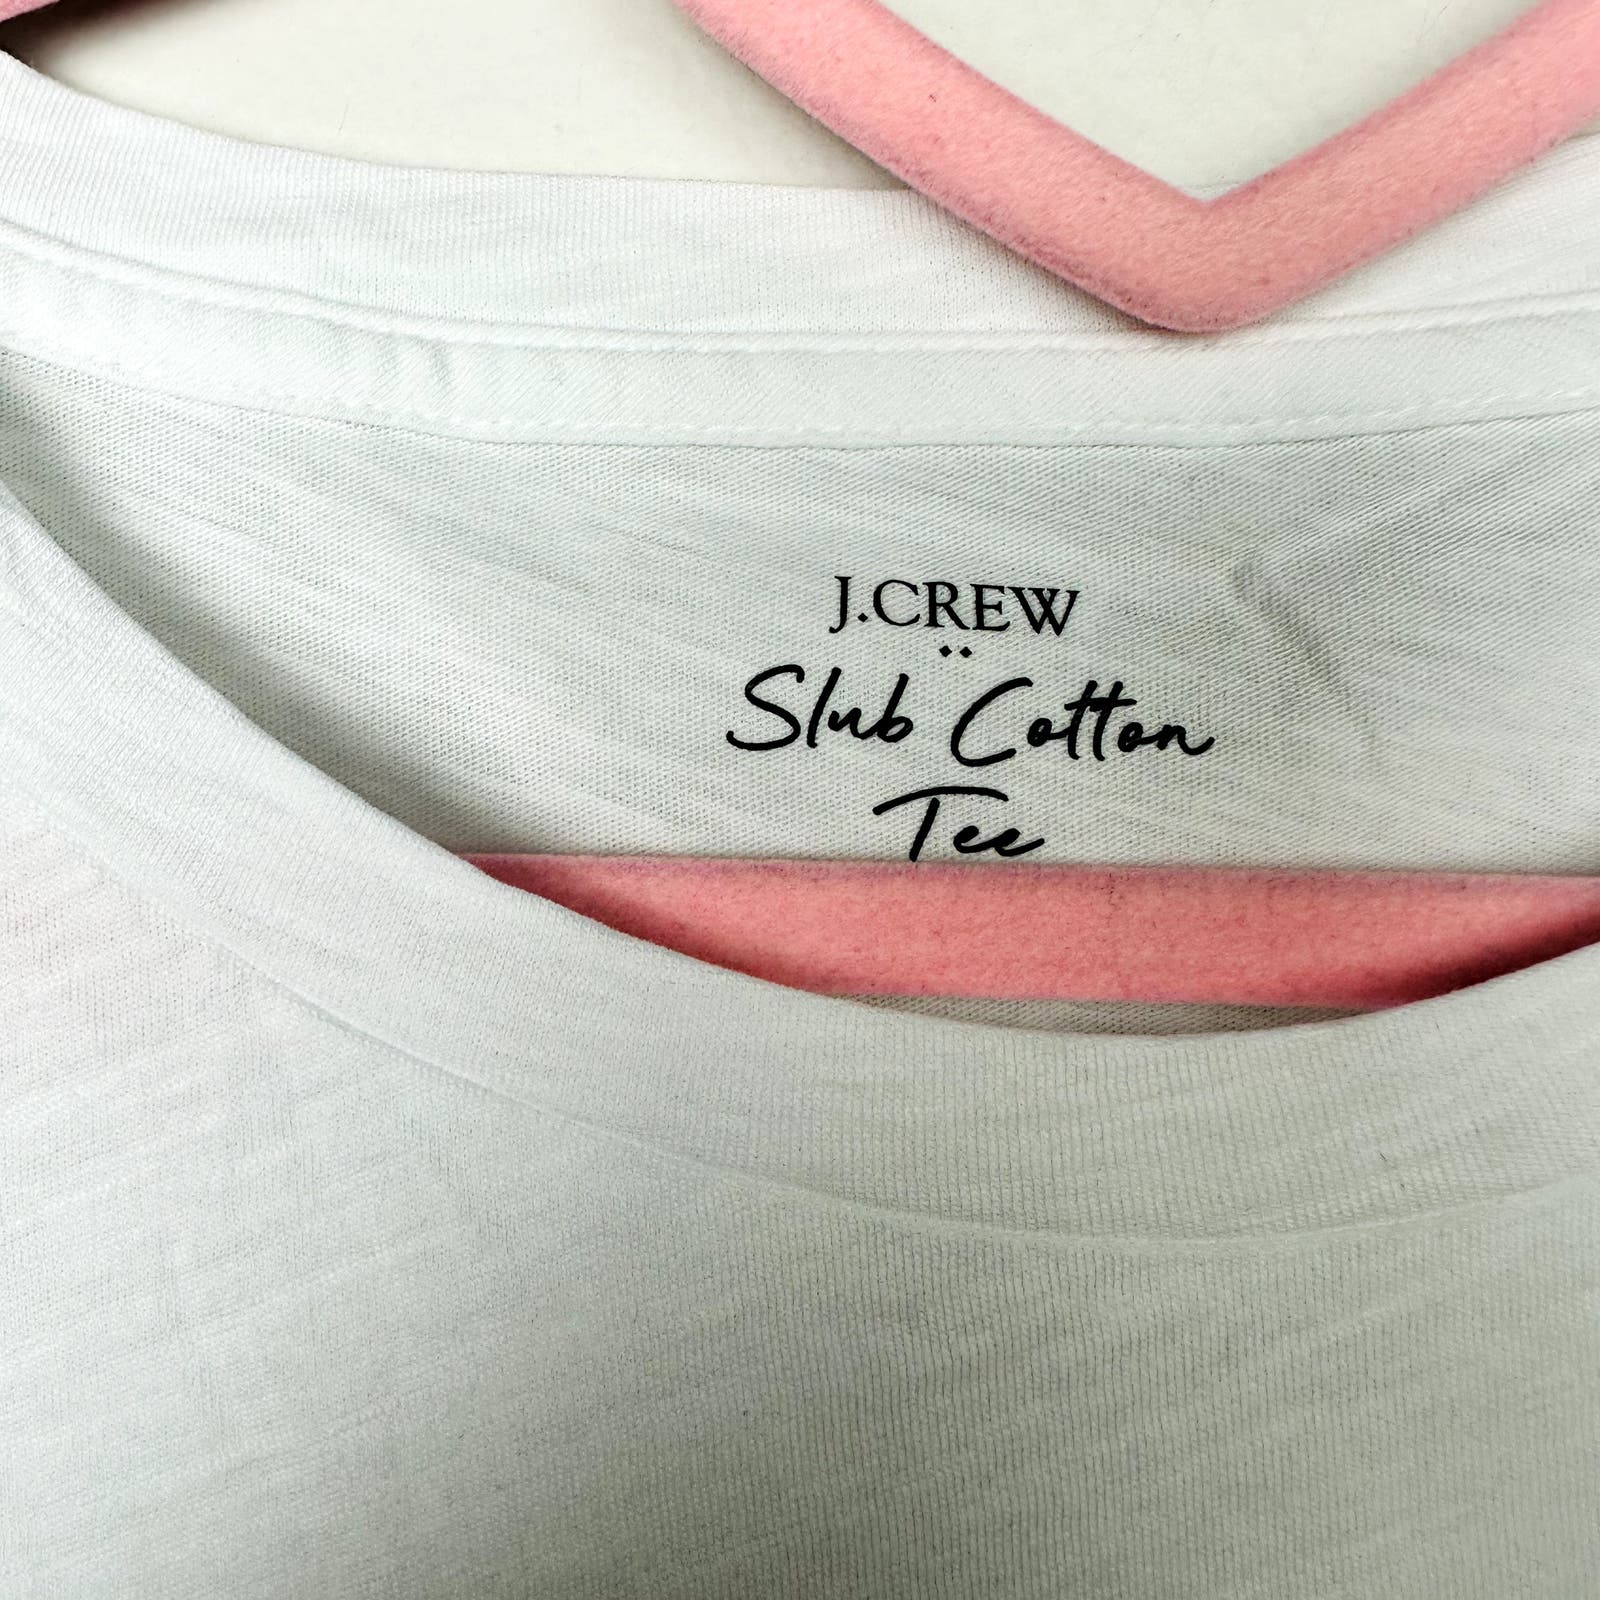 J. Crew Factory NWT White Vintage Slub Cotton Crewneck T-shirt White Size Medium